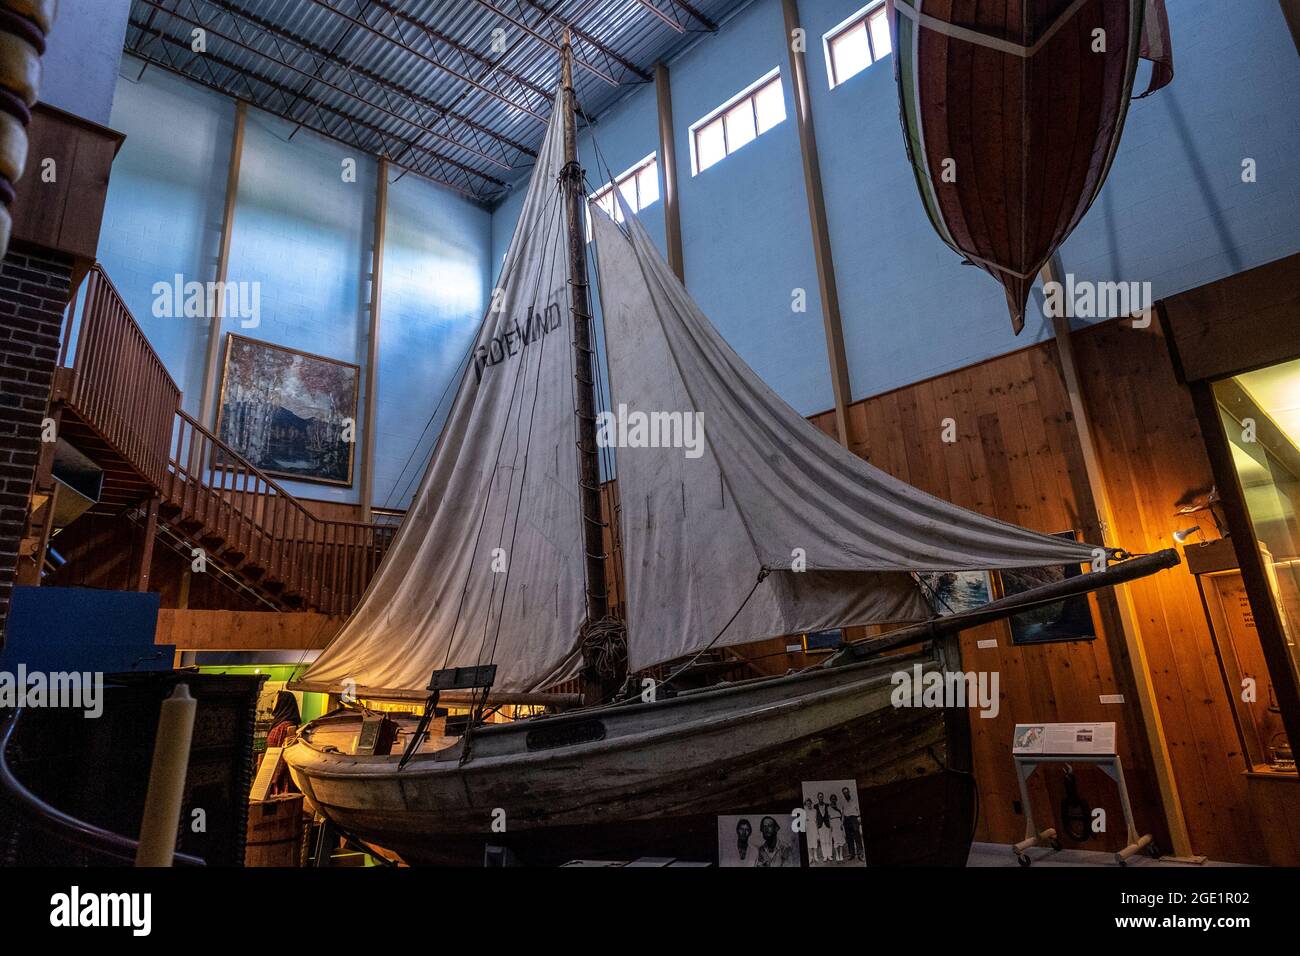 Trade Wind, ein Boot, das 1933 von Hans und Harald Hamran von Norwegen in die USA segelte, wurde im Vesterheim Norwegian American Museum, Decorah, Iowa, ausgestellt Stockfoto